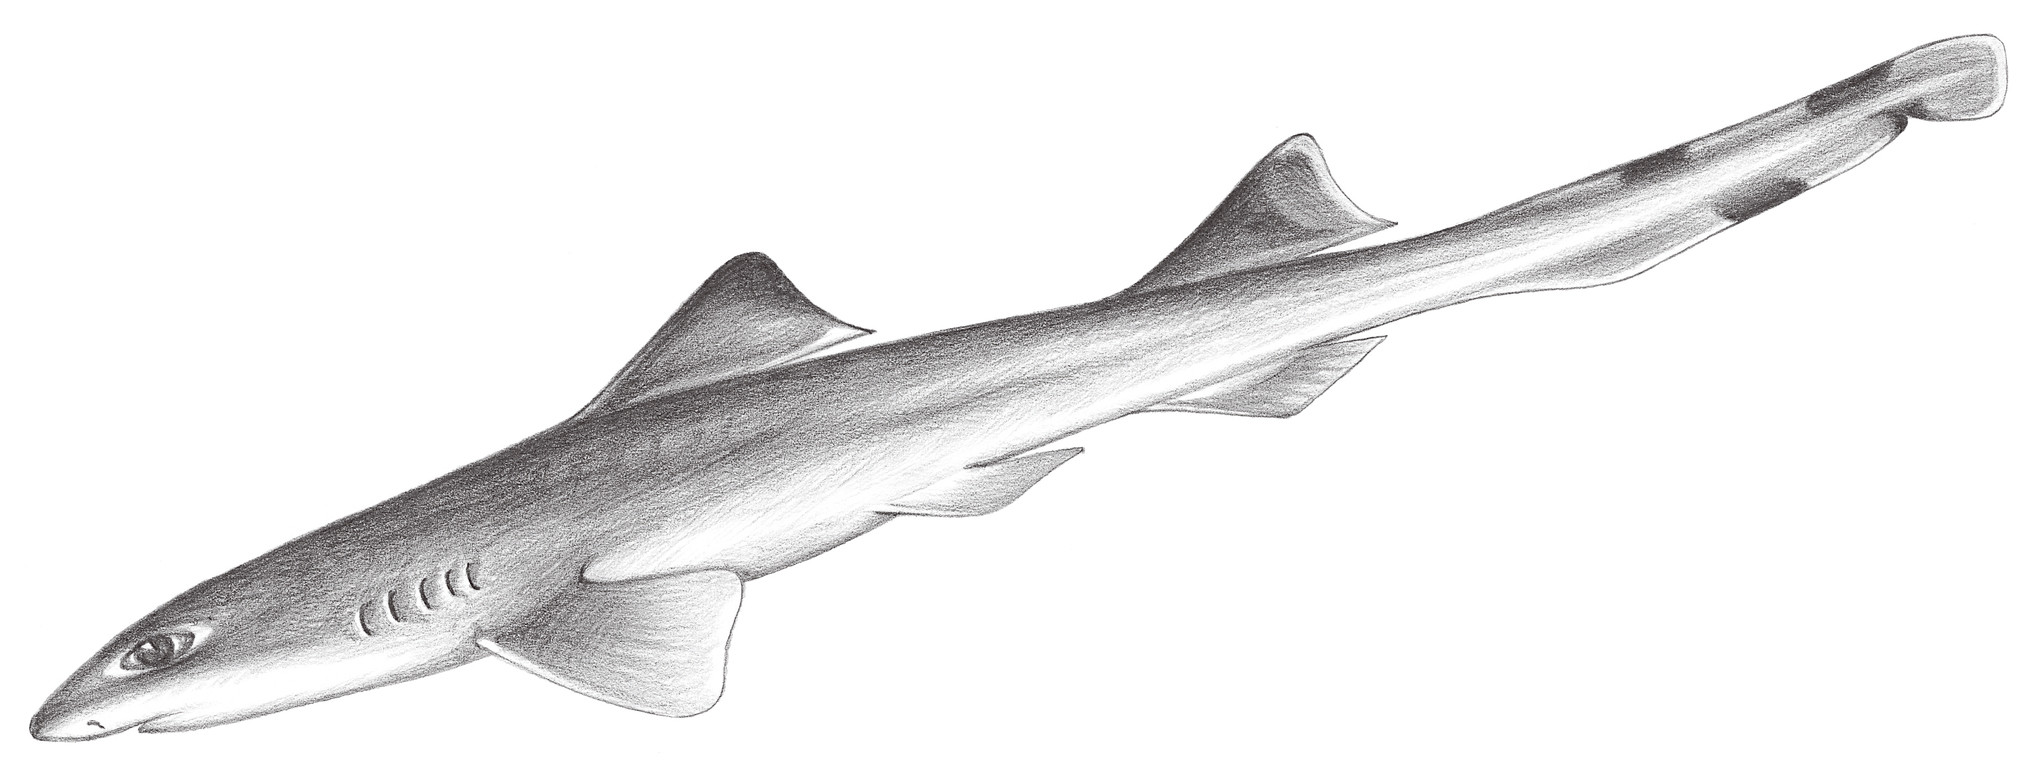 48.	斑鰭光唇鯊 Eridacnis radcliffei Smith, 1913